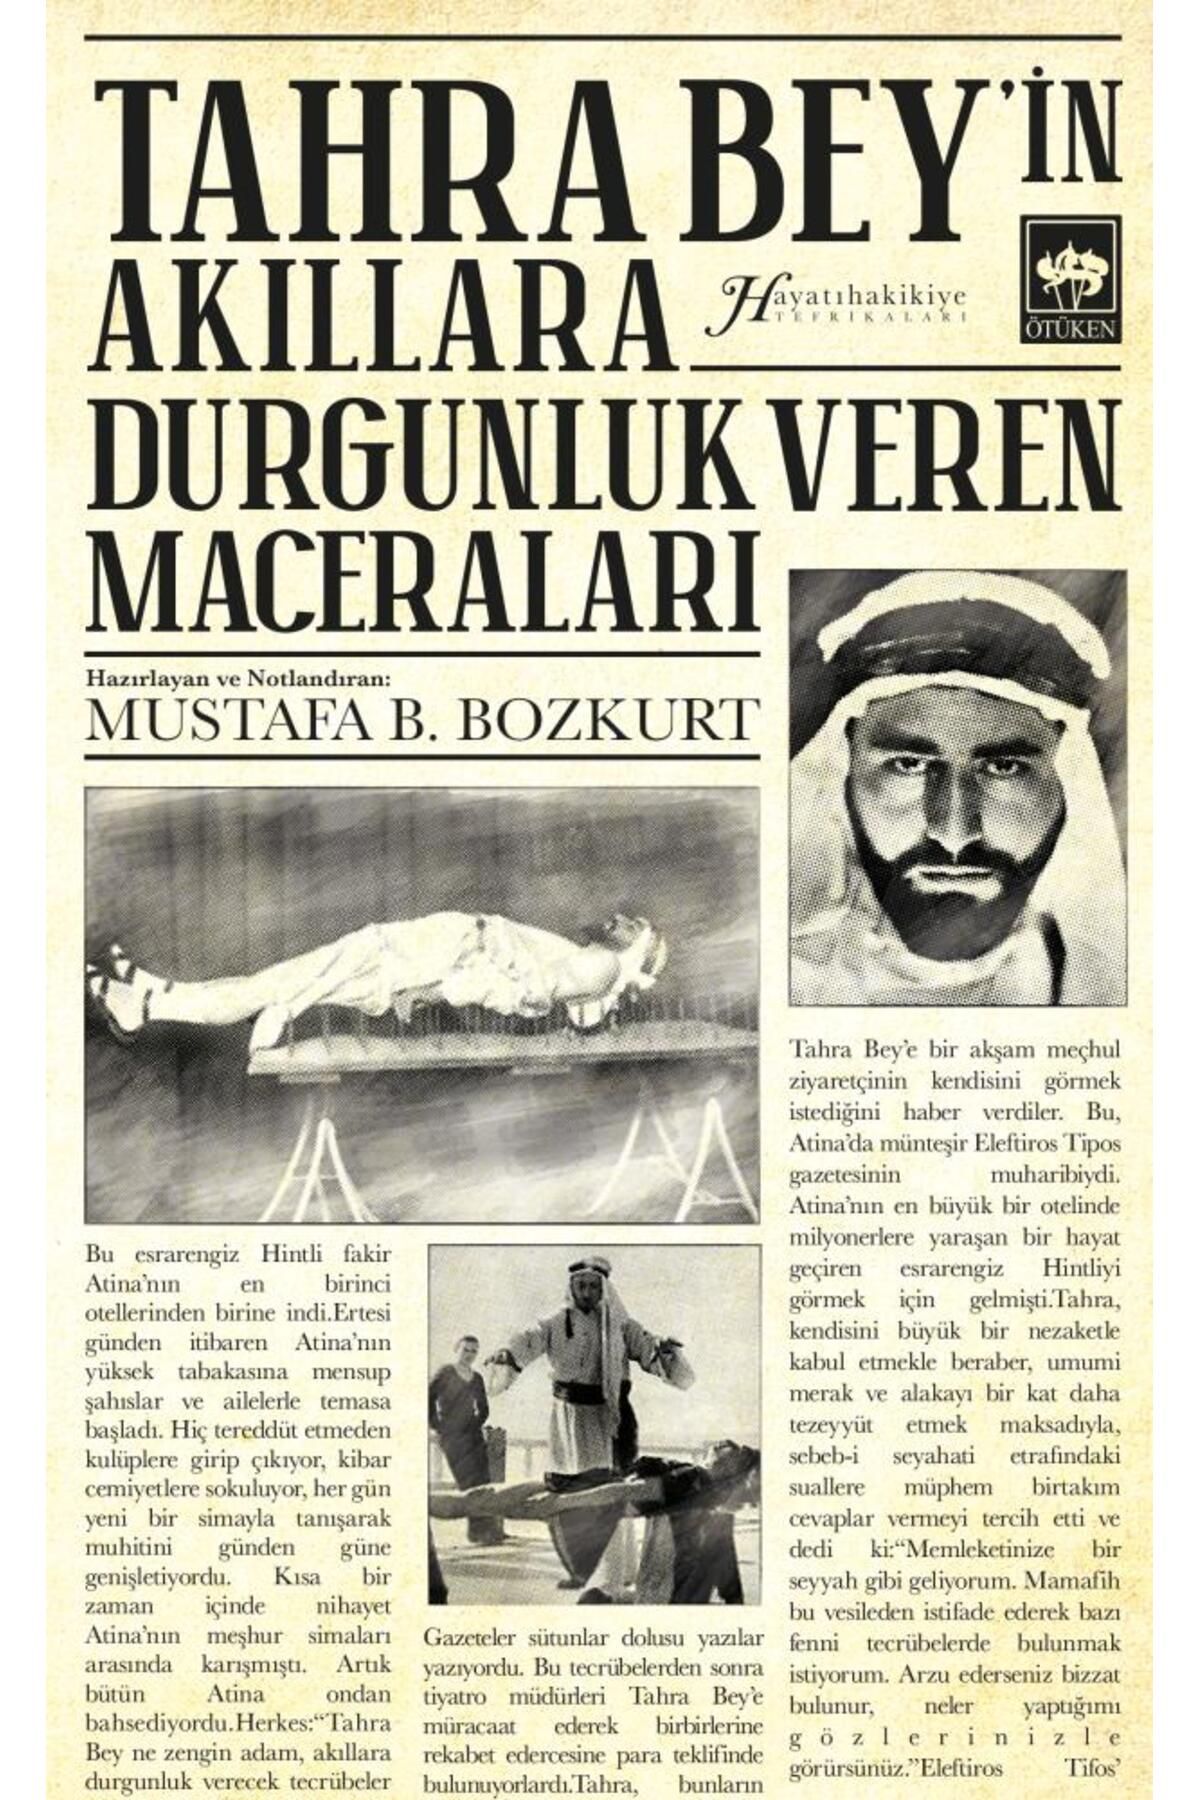 Ötüken Neşriyat Tahra Bey'in Akıllara Durgunluk Veren Maceraları / Mustafa B. Bozkurt